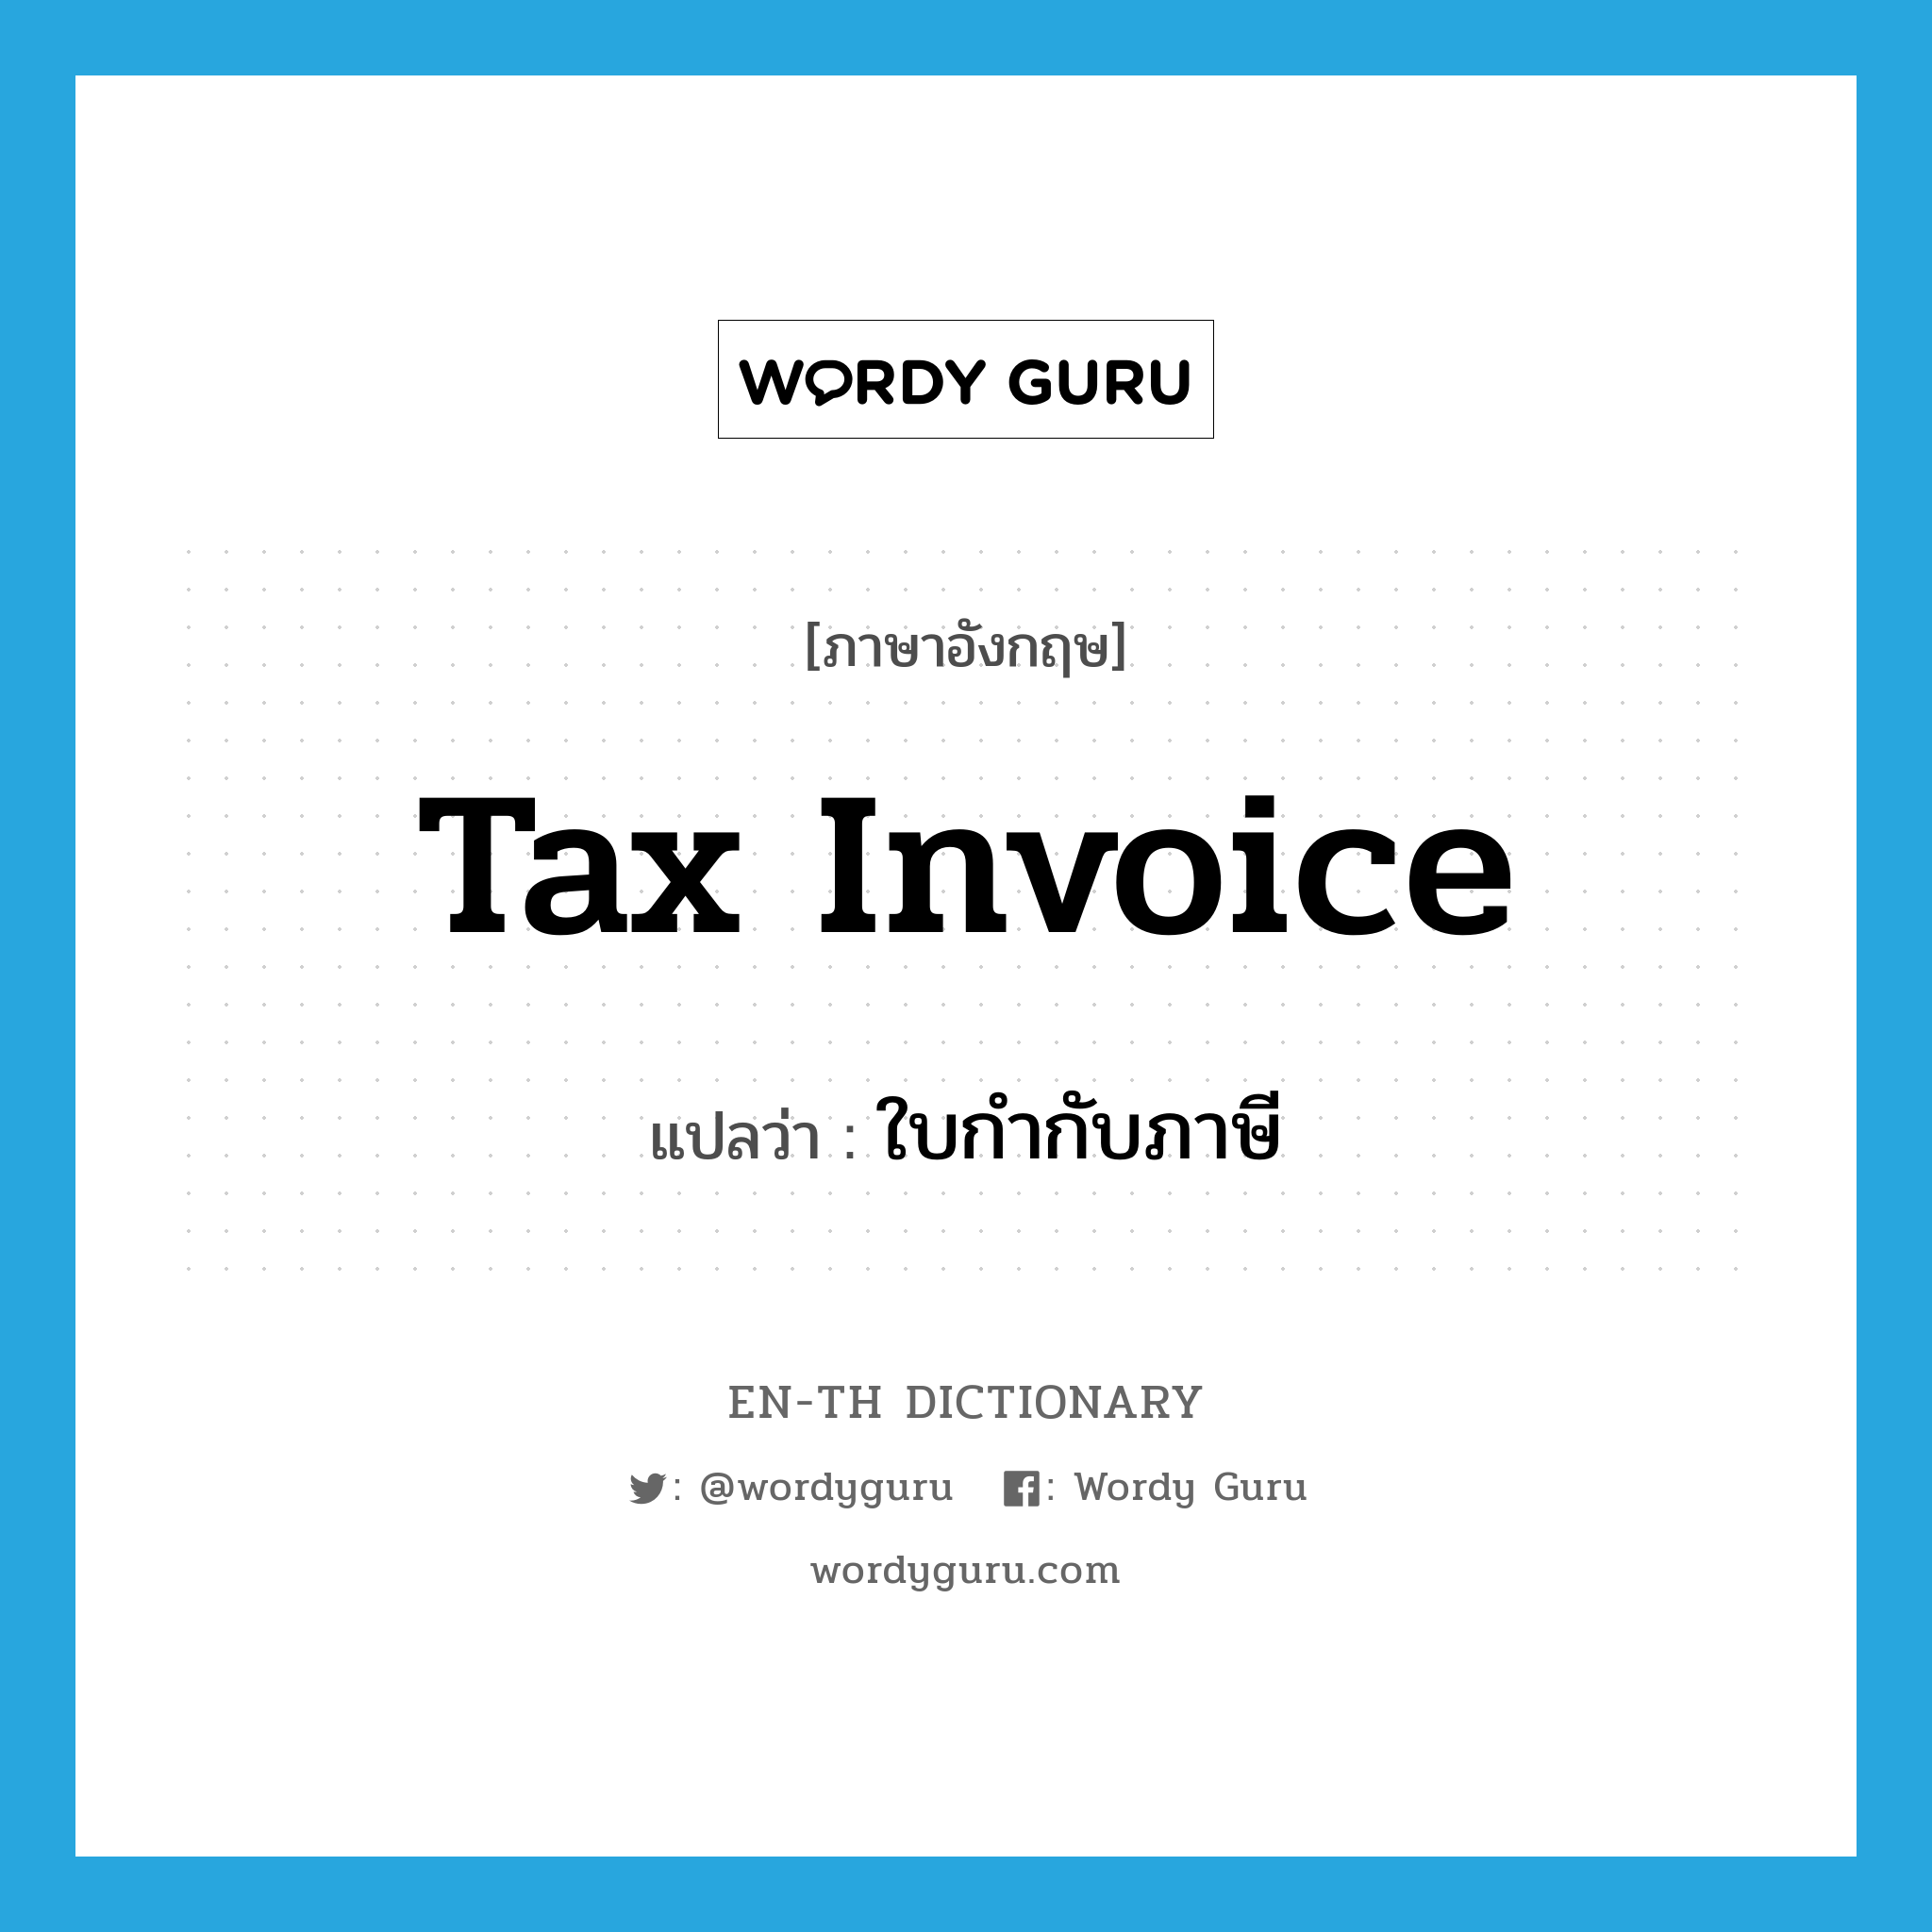 tax invoice แปลว่า?, คำศัพท์ภาษาอังกฤษ tax invoice แปลว่า ใบกำกับภาษี ประเภท N หมวด N